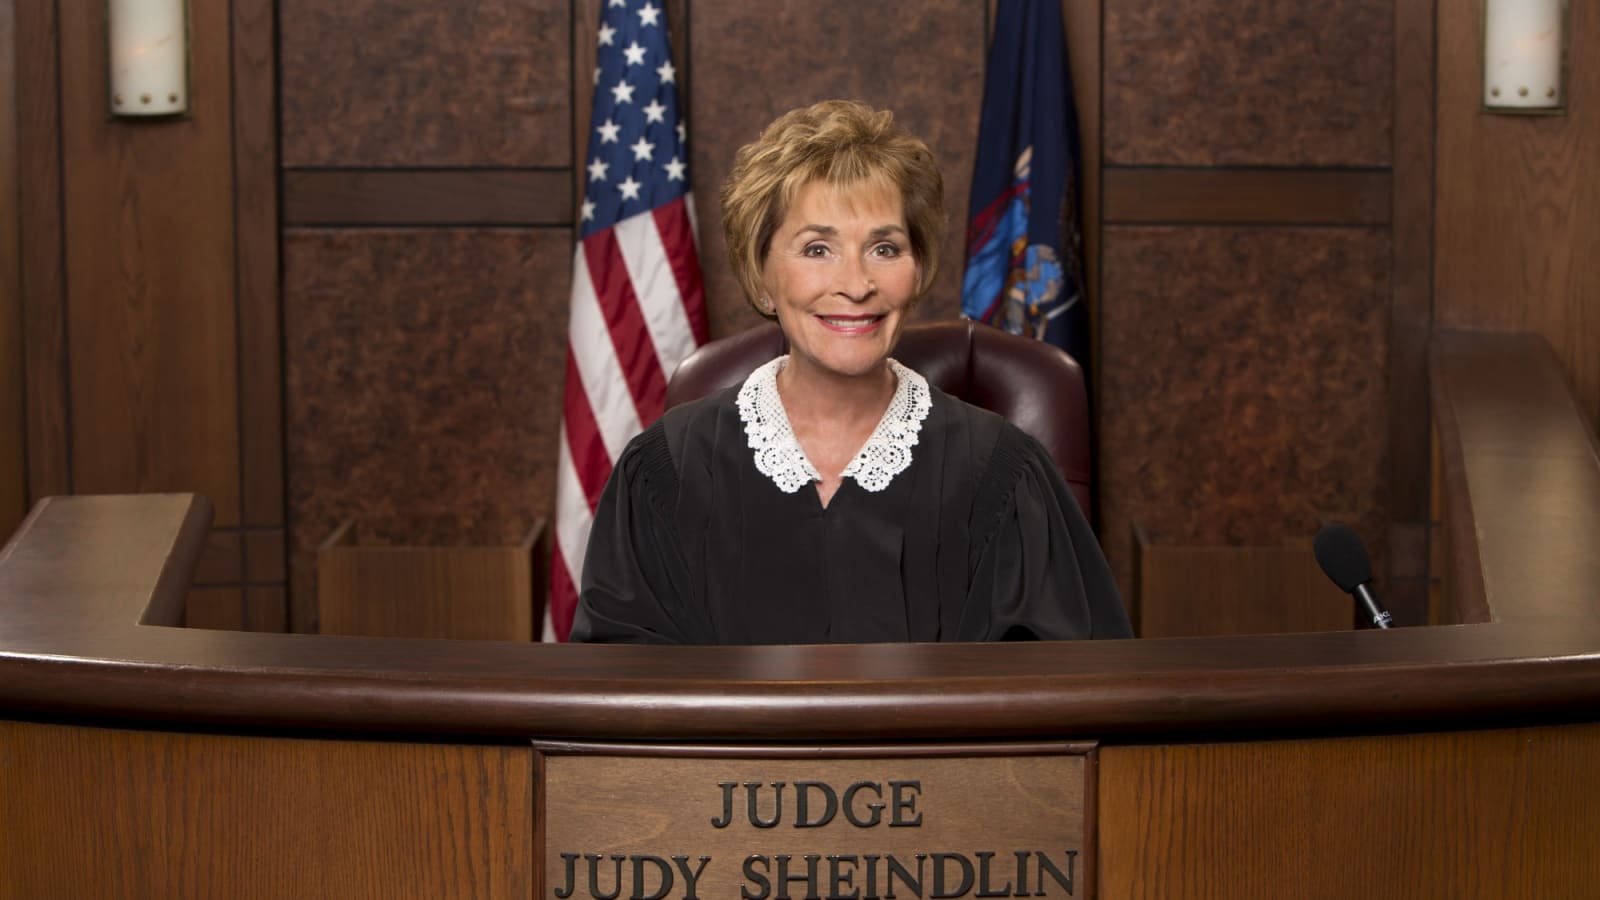 Judith Sheindlin est la juge la plus célèbre des Etats-Unis. Pendant 25 ans, elle a été Judge Judy.